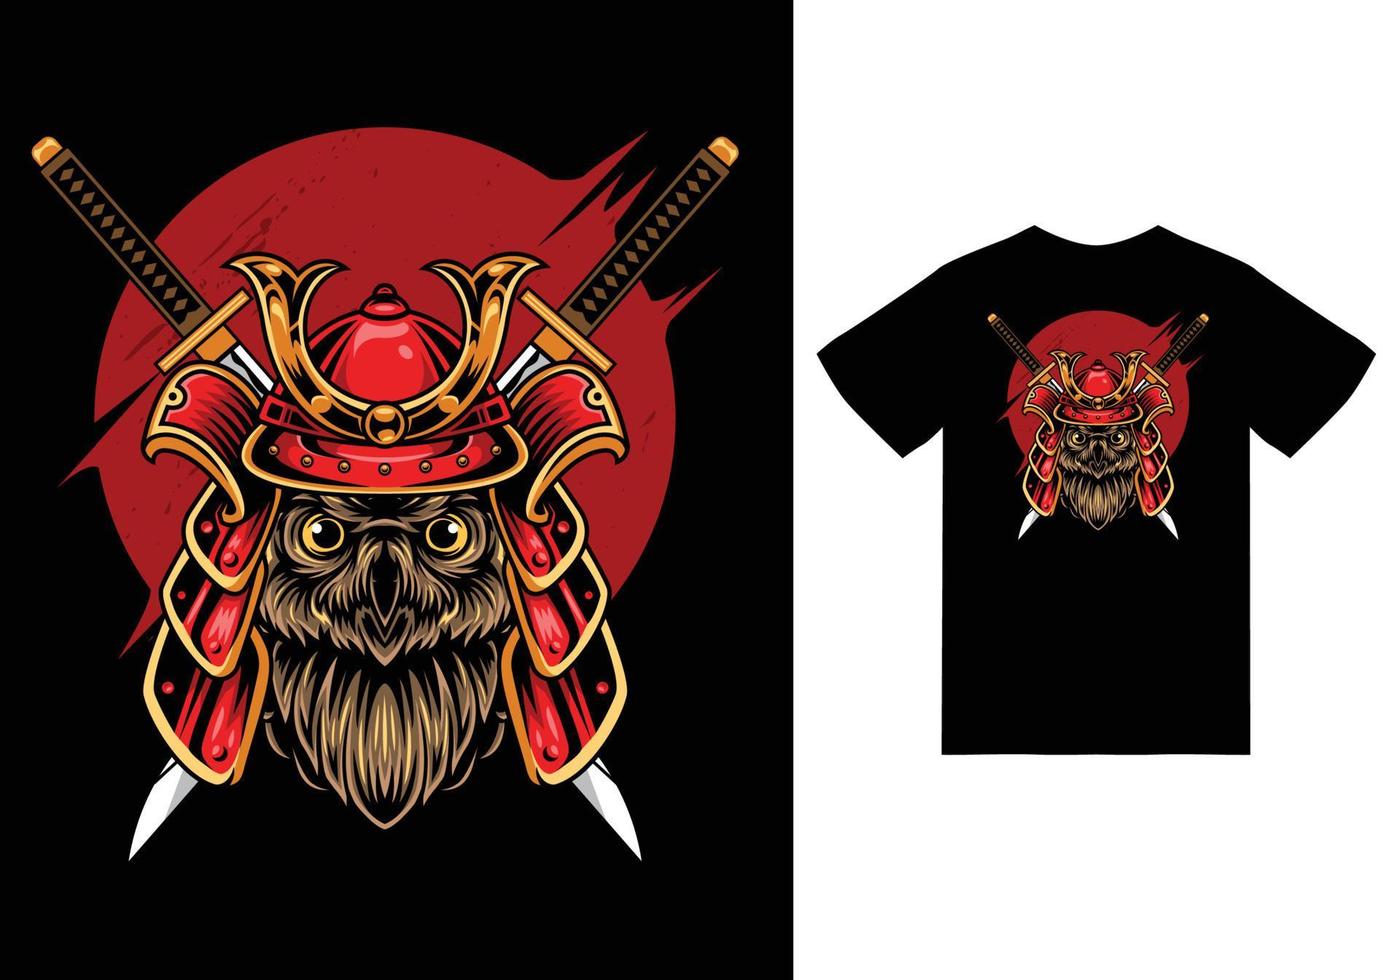 Owl samurai illustration with tshirt design premium vector